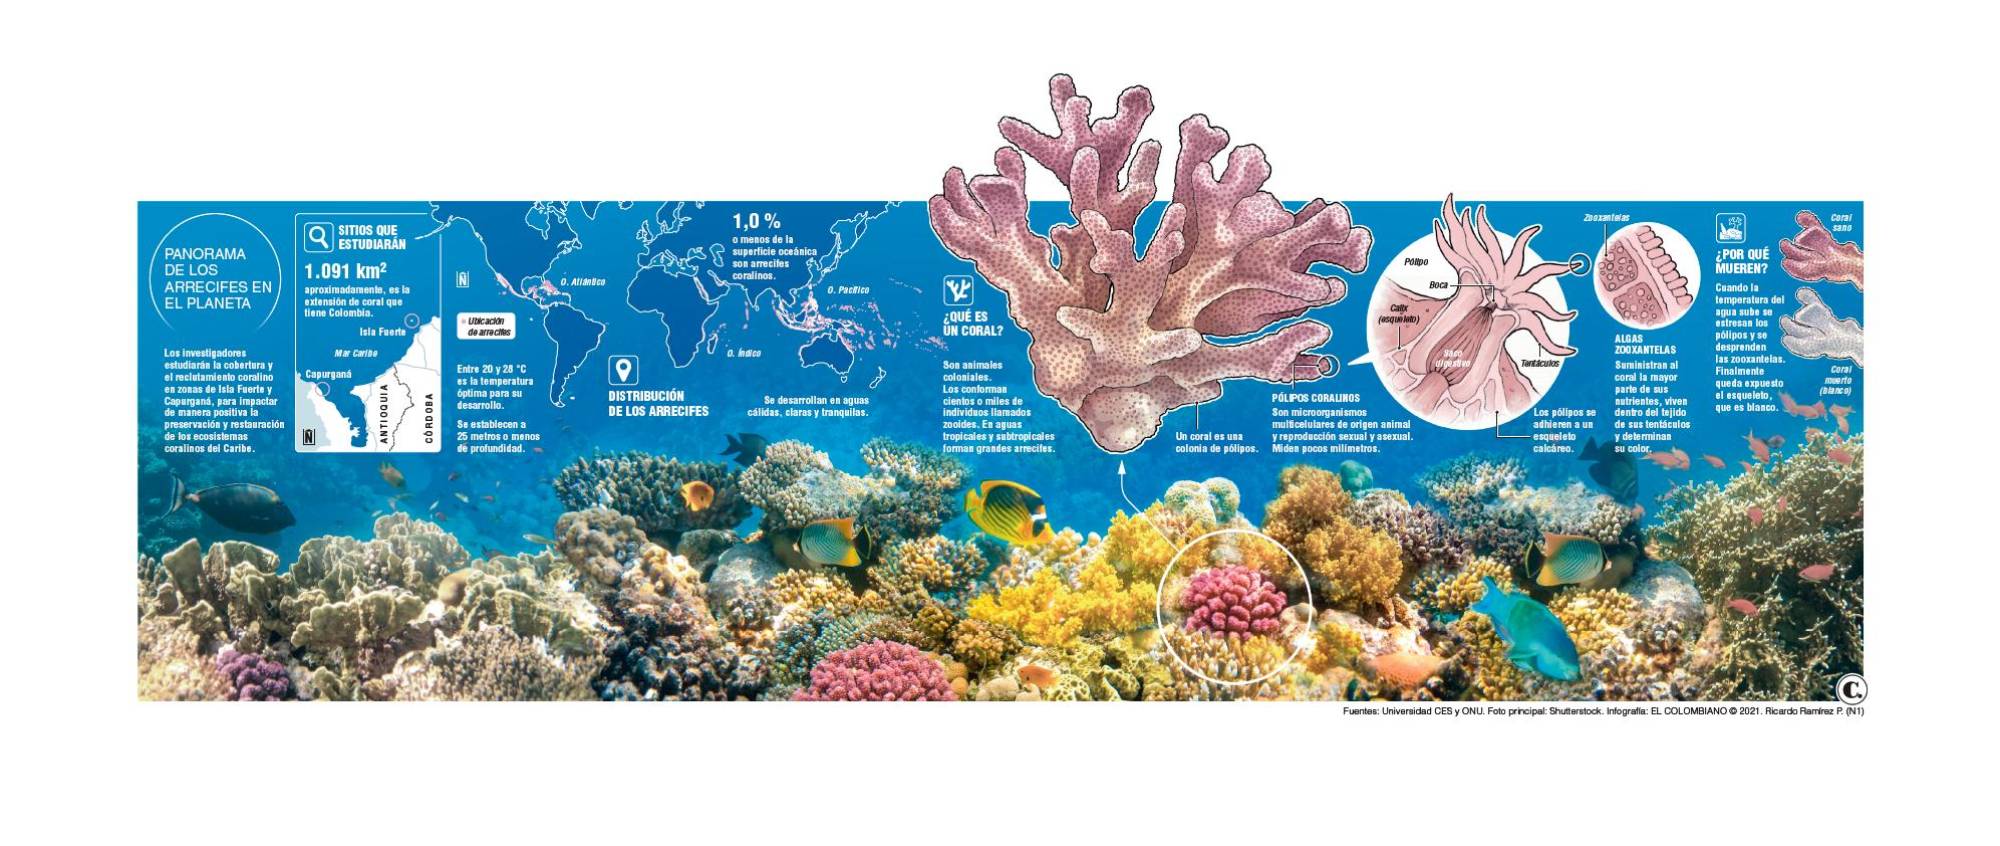 Expedición paisa busca preservar los corales 